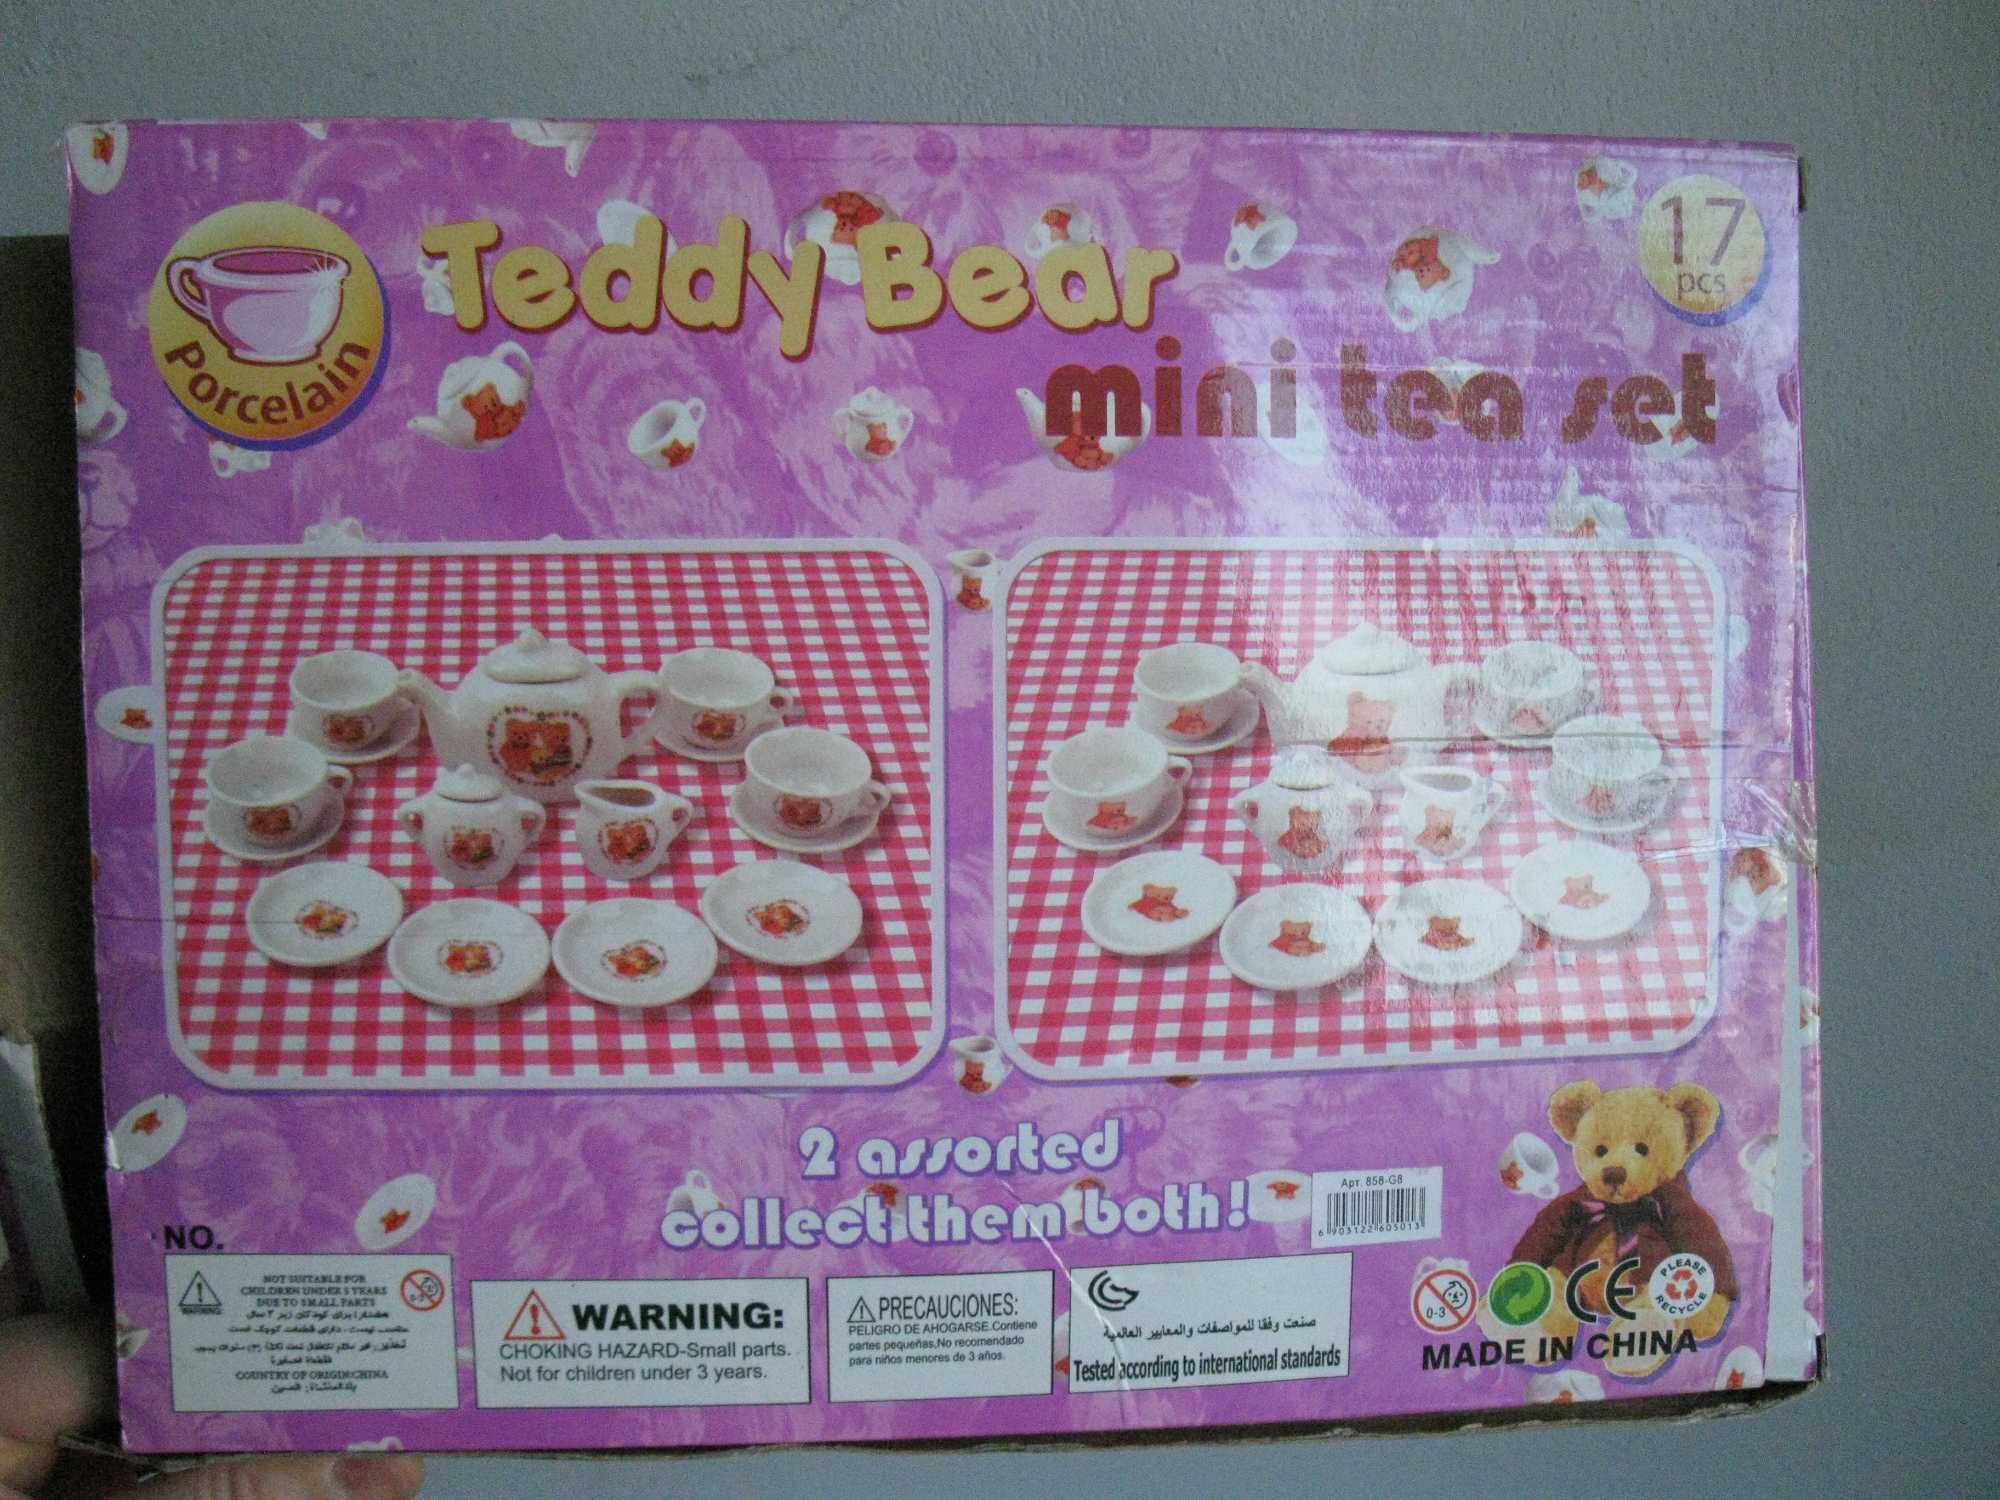 Игрушечный чайный сервиз набор Teddy bears mini tea set  17 pcs